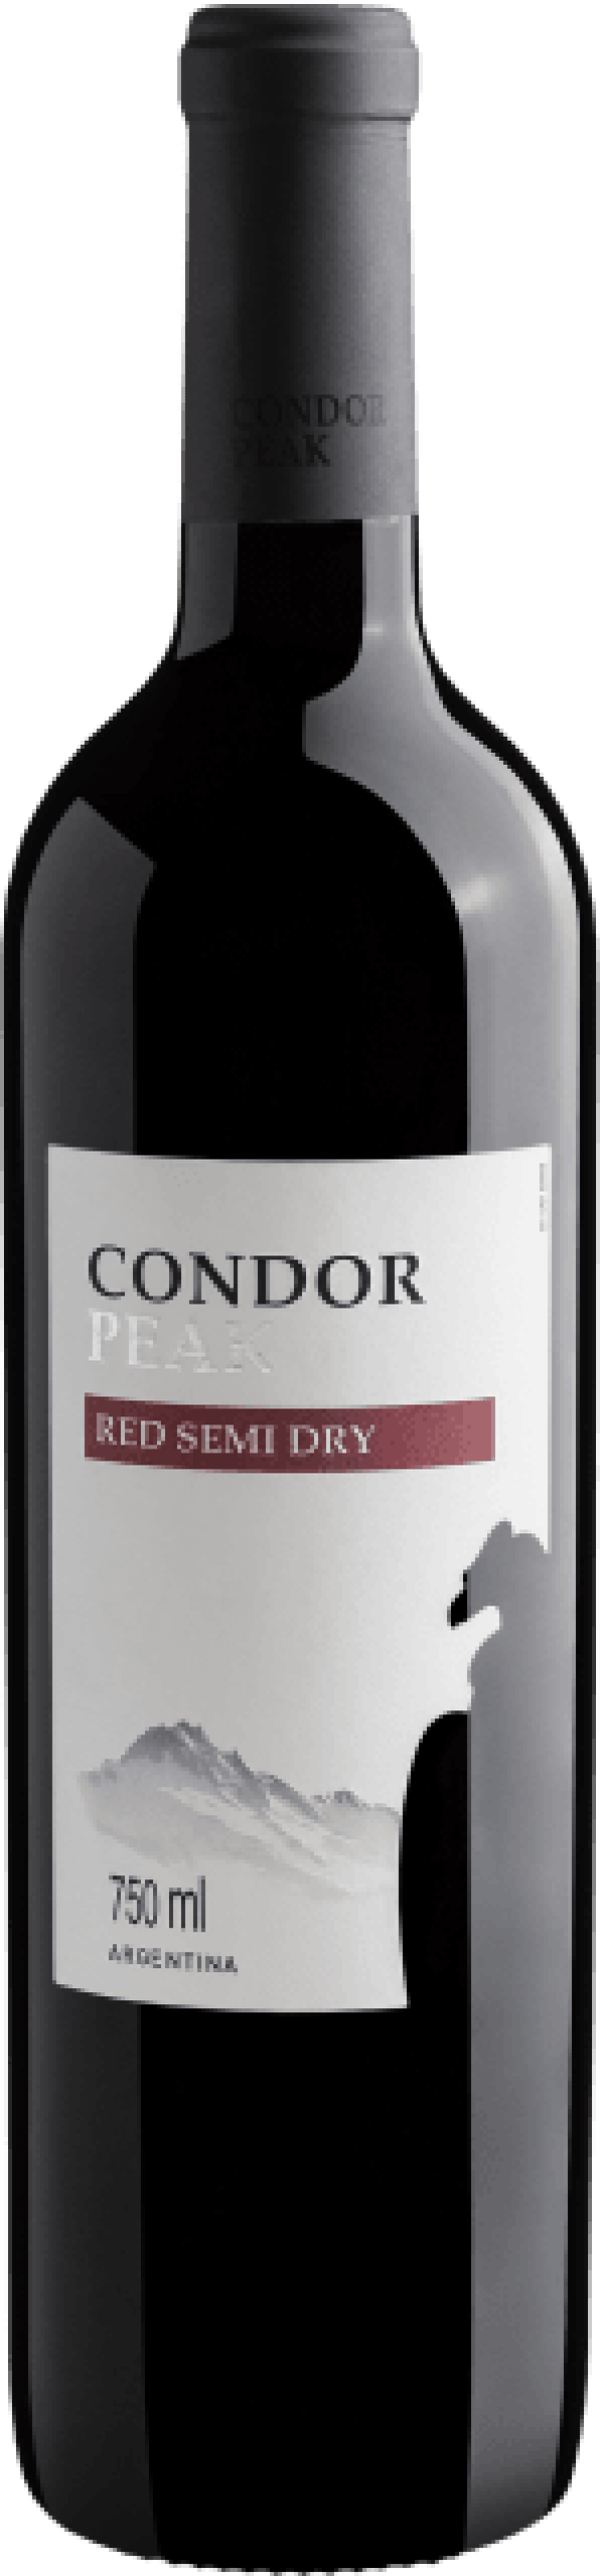 Condor Peak Red Semi Dry 2020